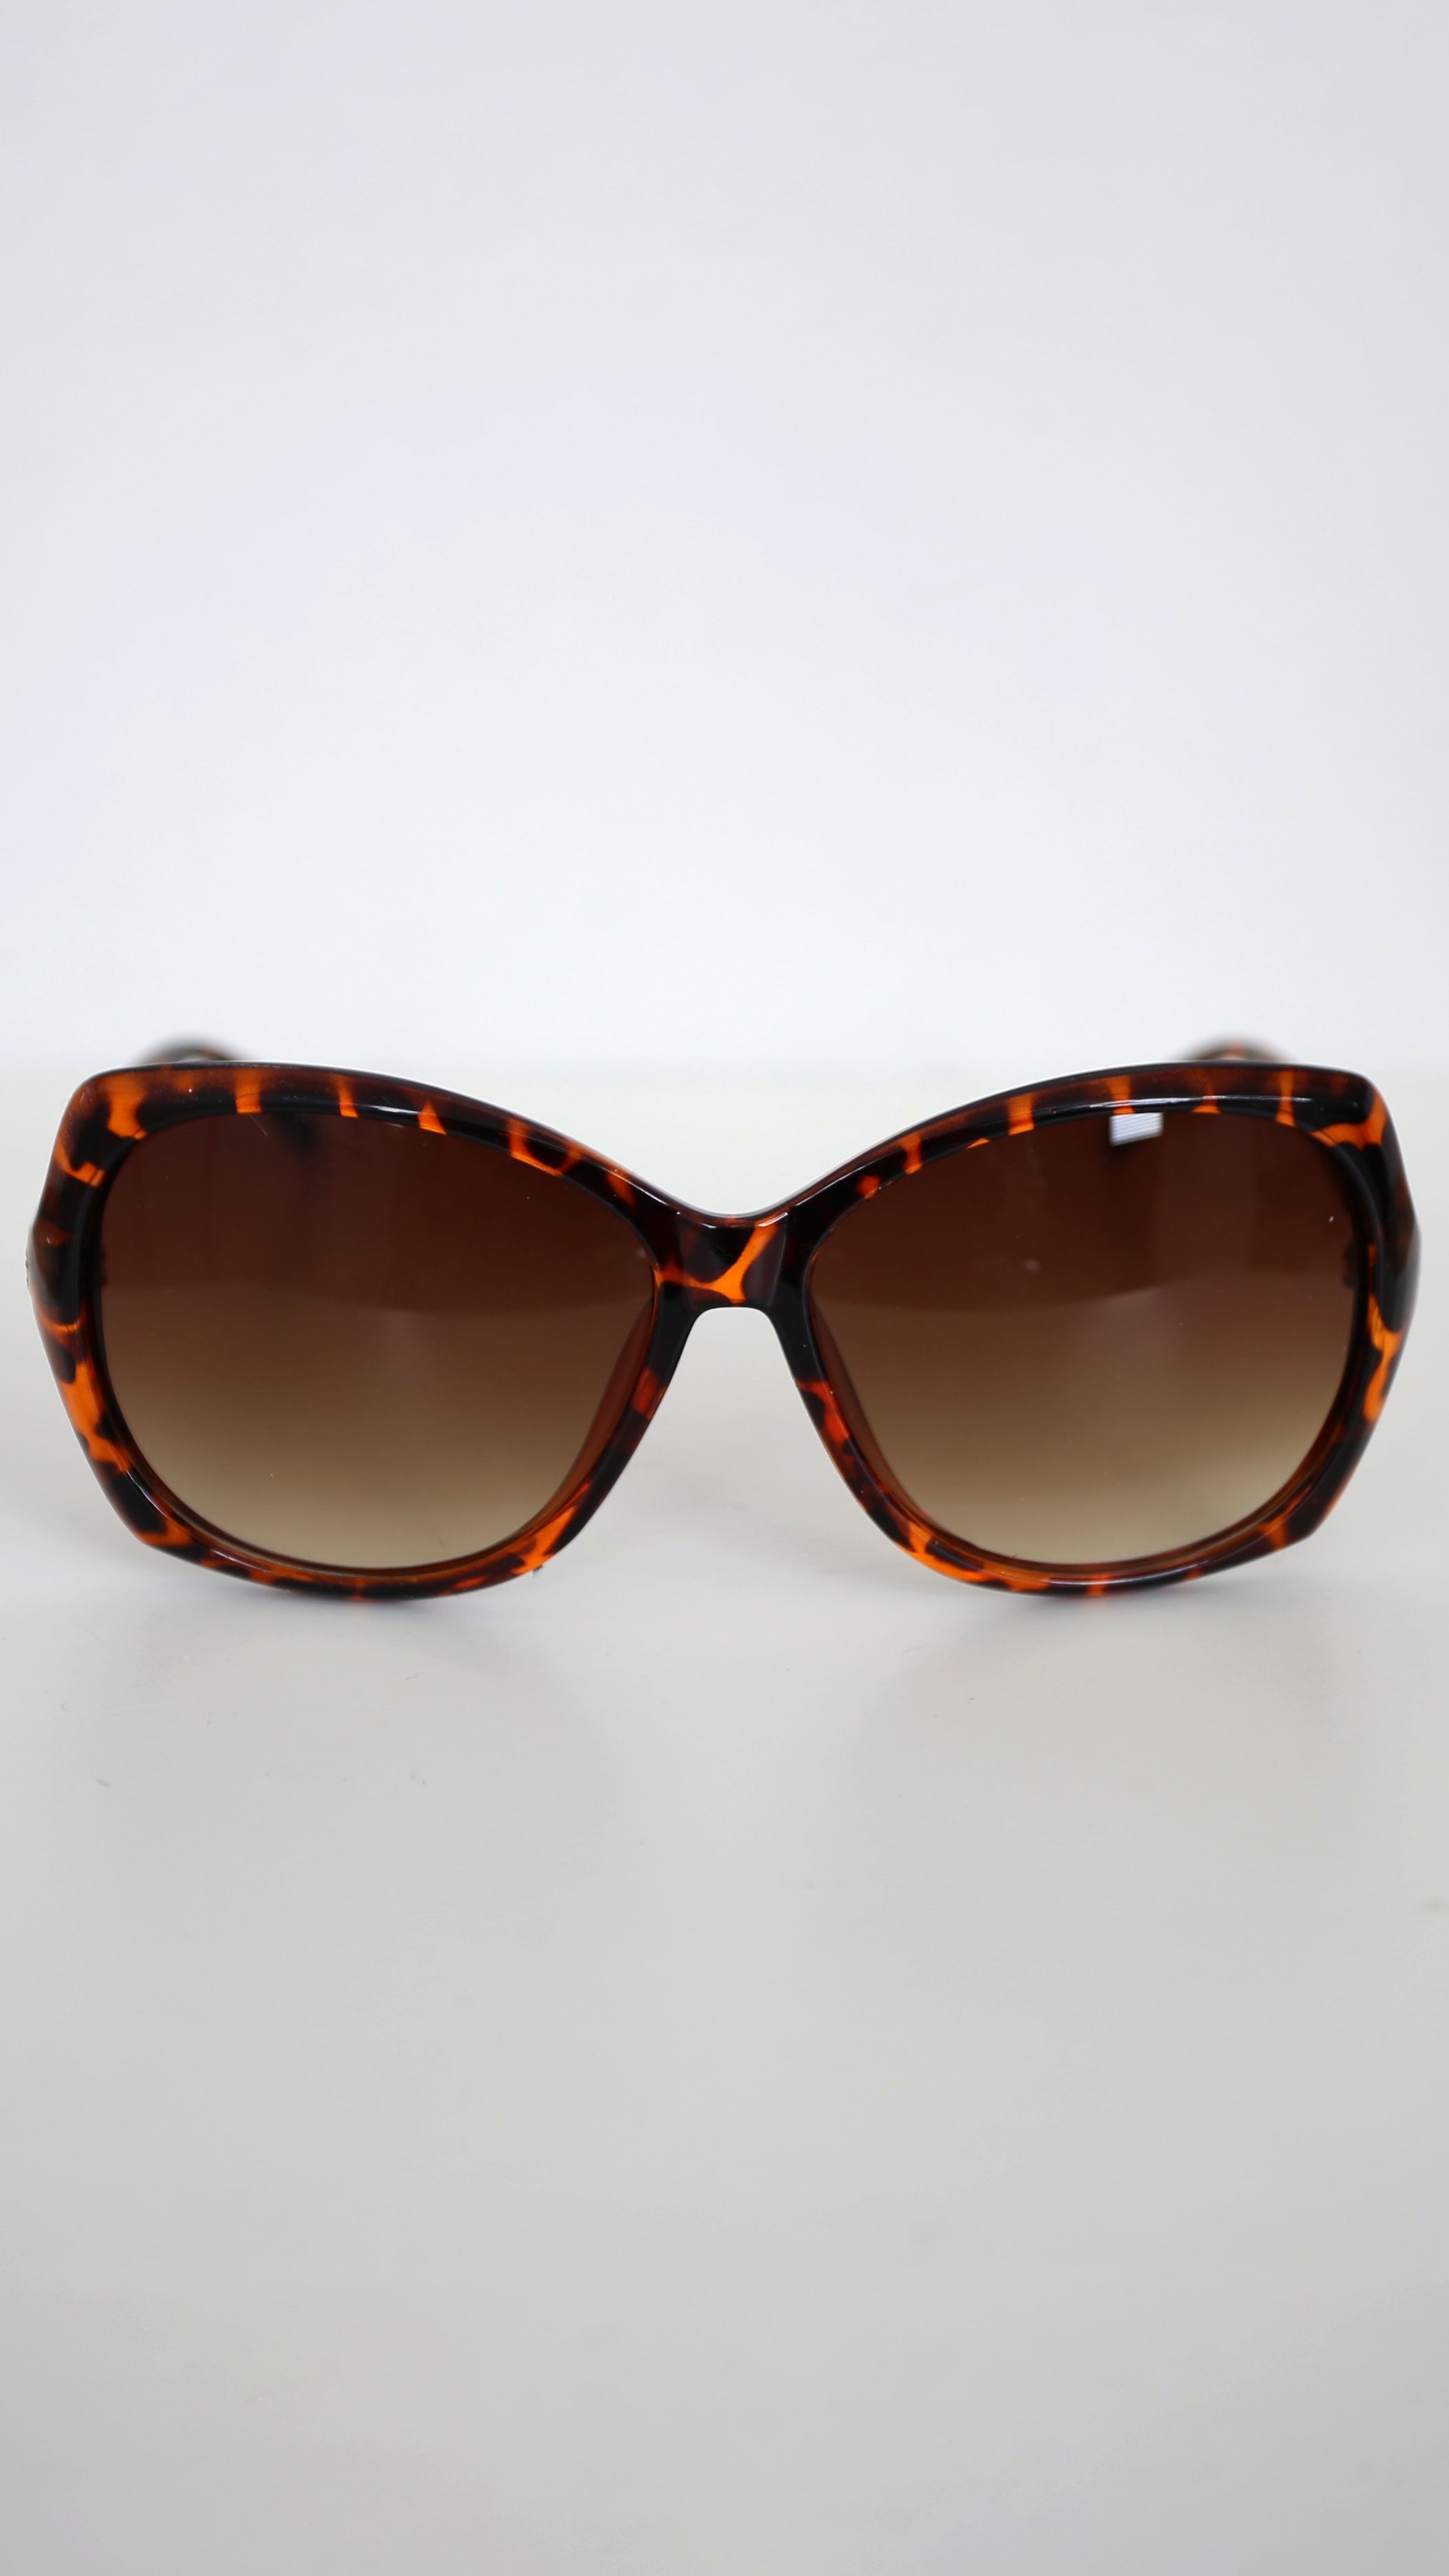 Ninette Brown Tortoiseshell Sunglasses